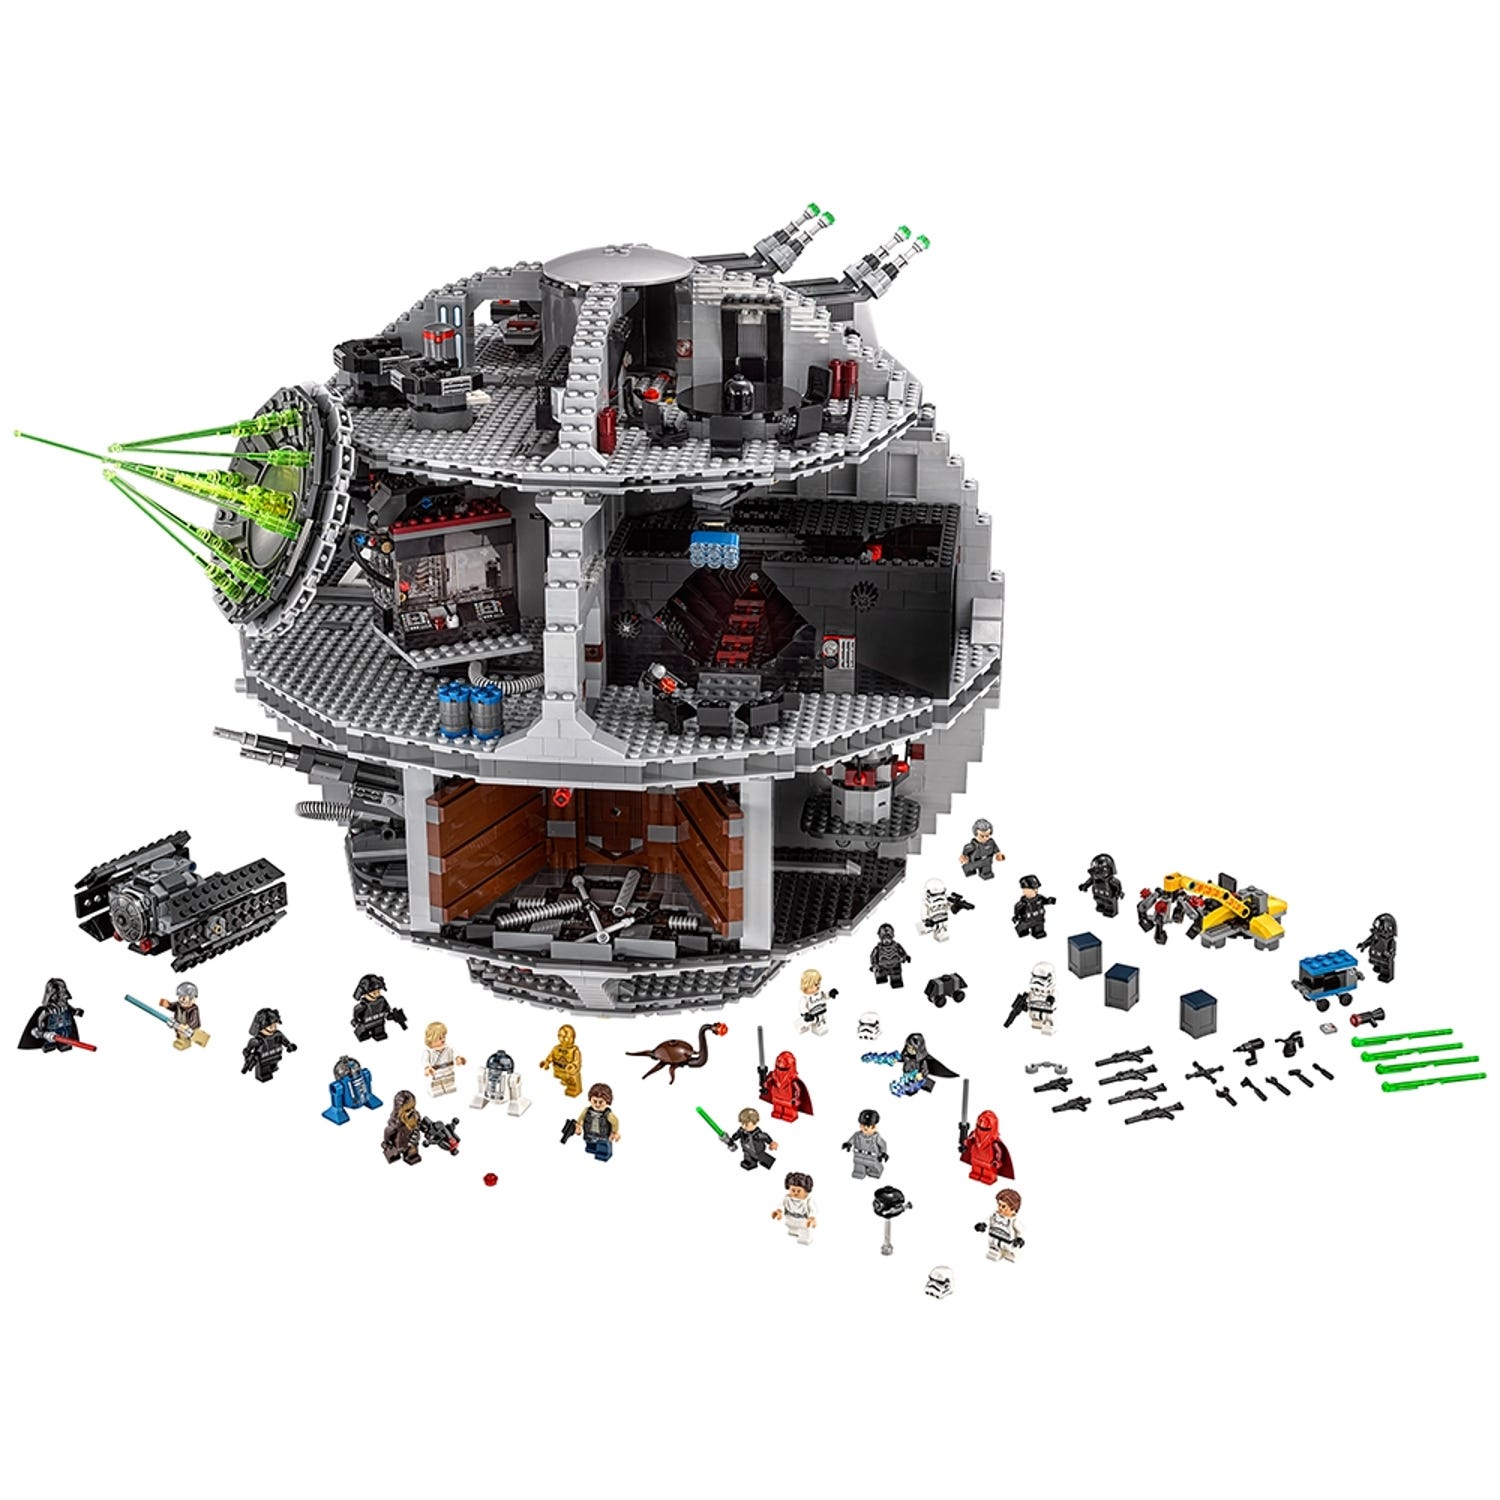 Death Starâ¢ 75159 | Star Warsâ¢ | Buy online at the Official LEGOÂ® Shop US